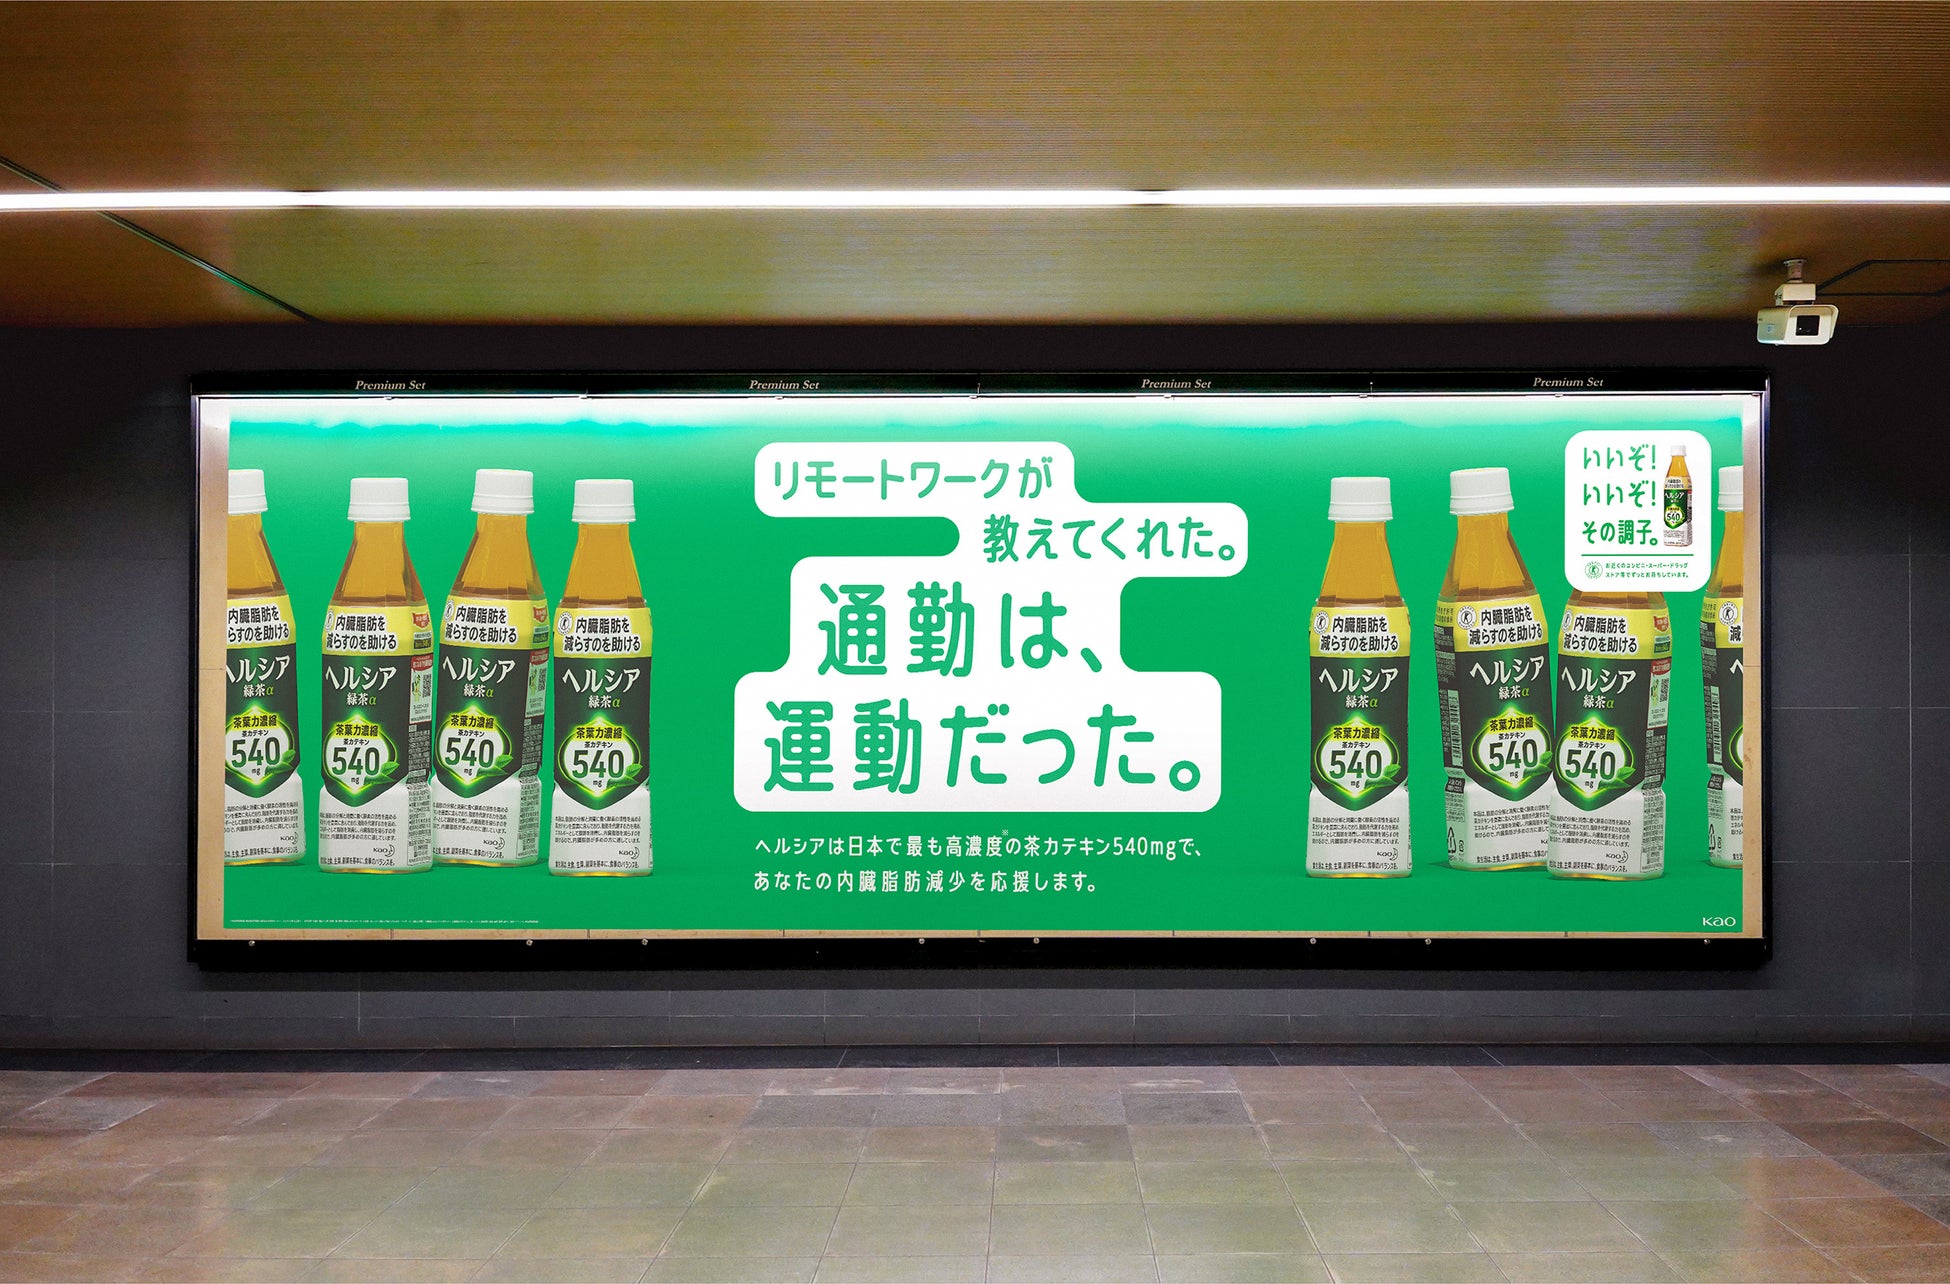 “日本一深い地下鉄の駅”大江戸線六本木駅の、長い階段をのぼる人たちを応援！ヘルシア緑茶「ヘルシーへの階段！」全階段ジャック広告掲出後に階段利用者が20%増！